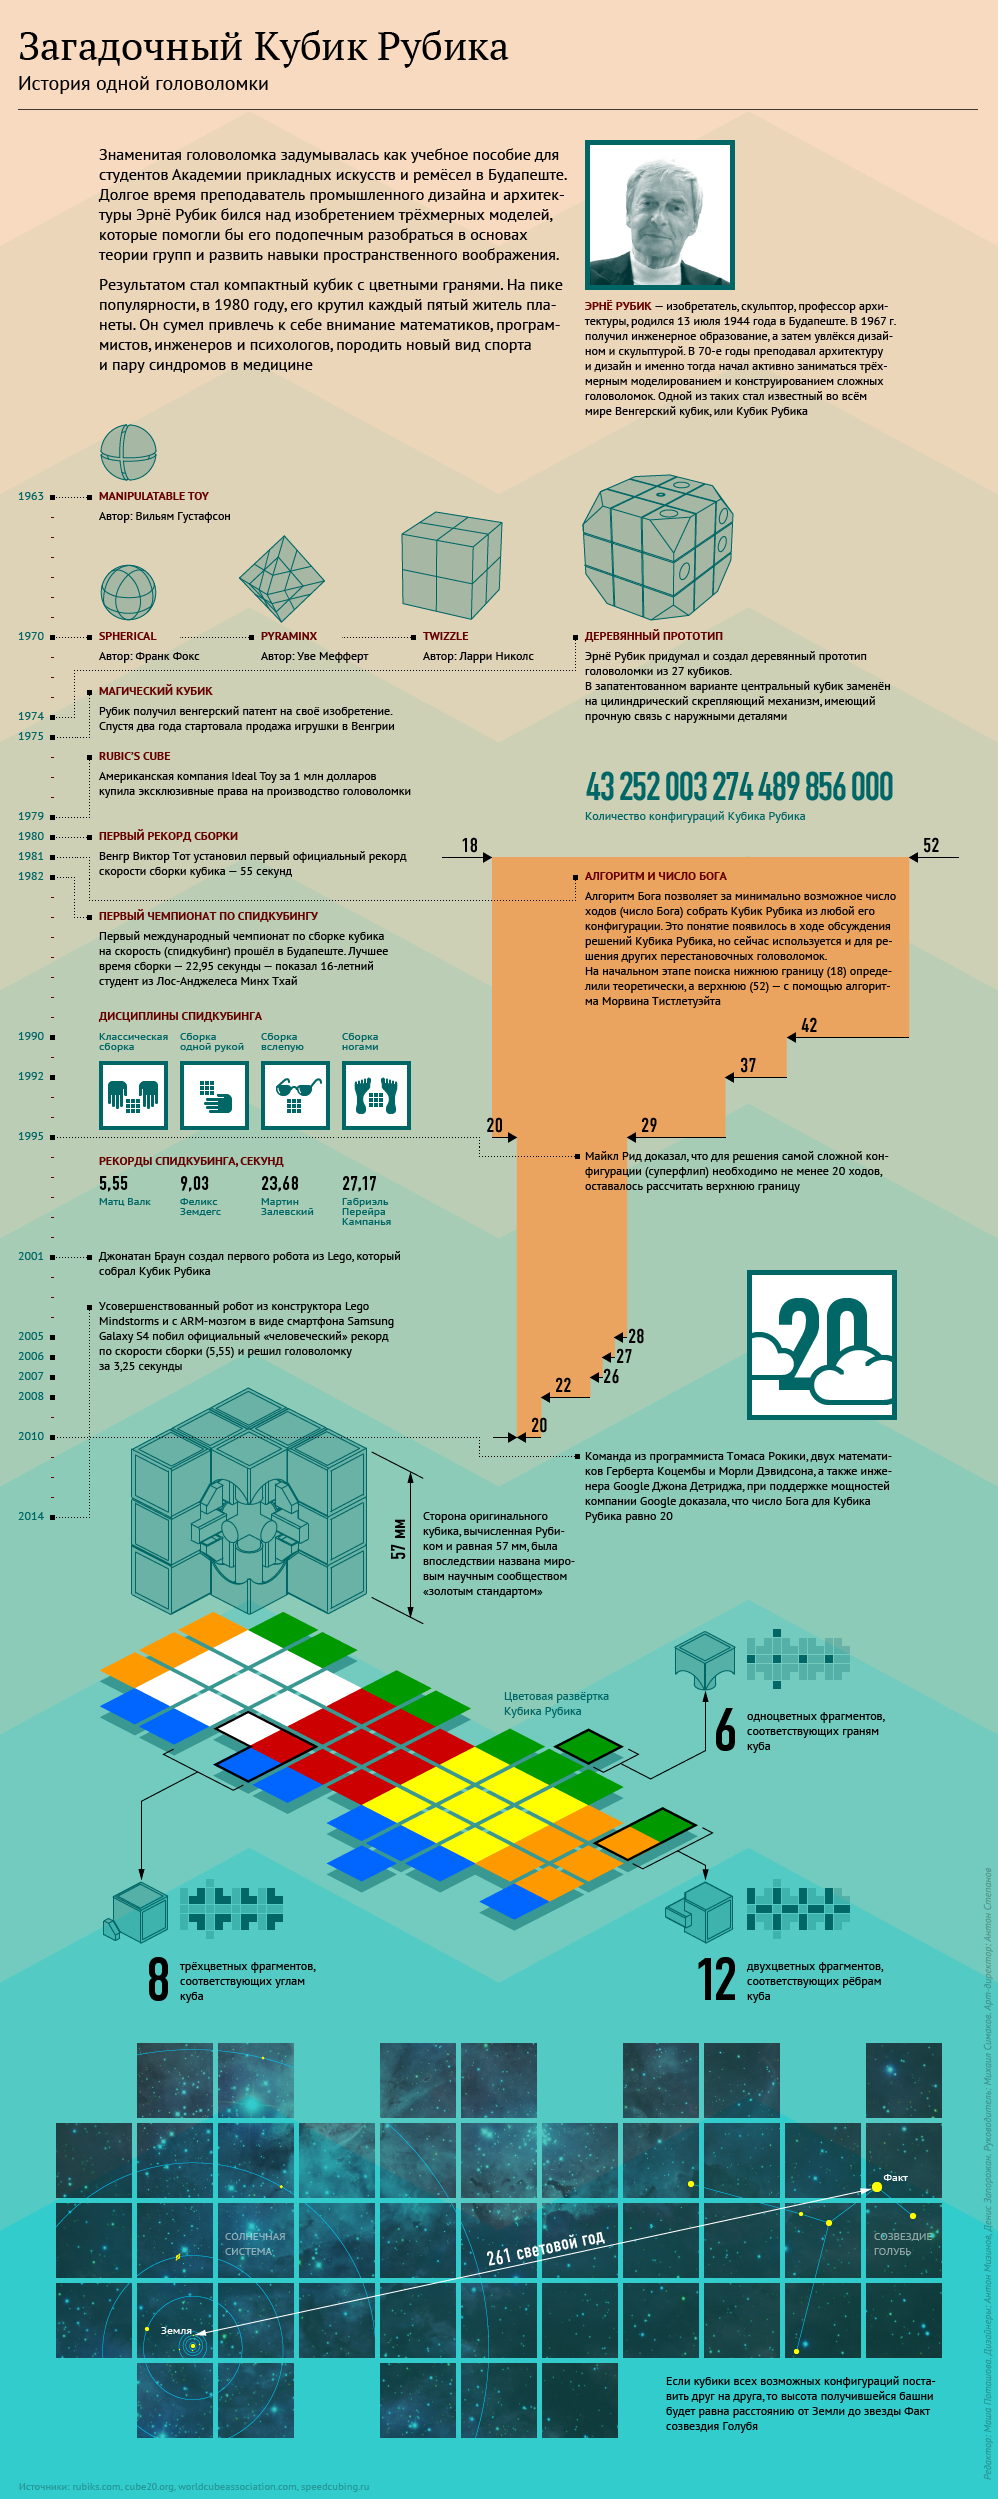 Факты о Кубике Рубика